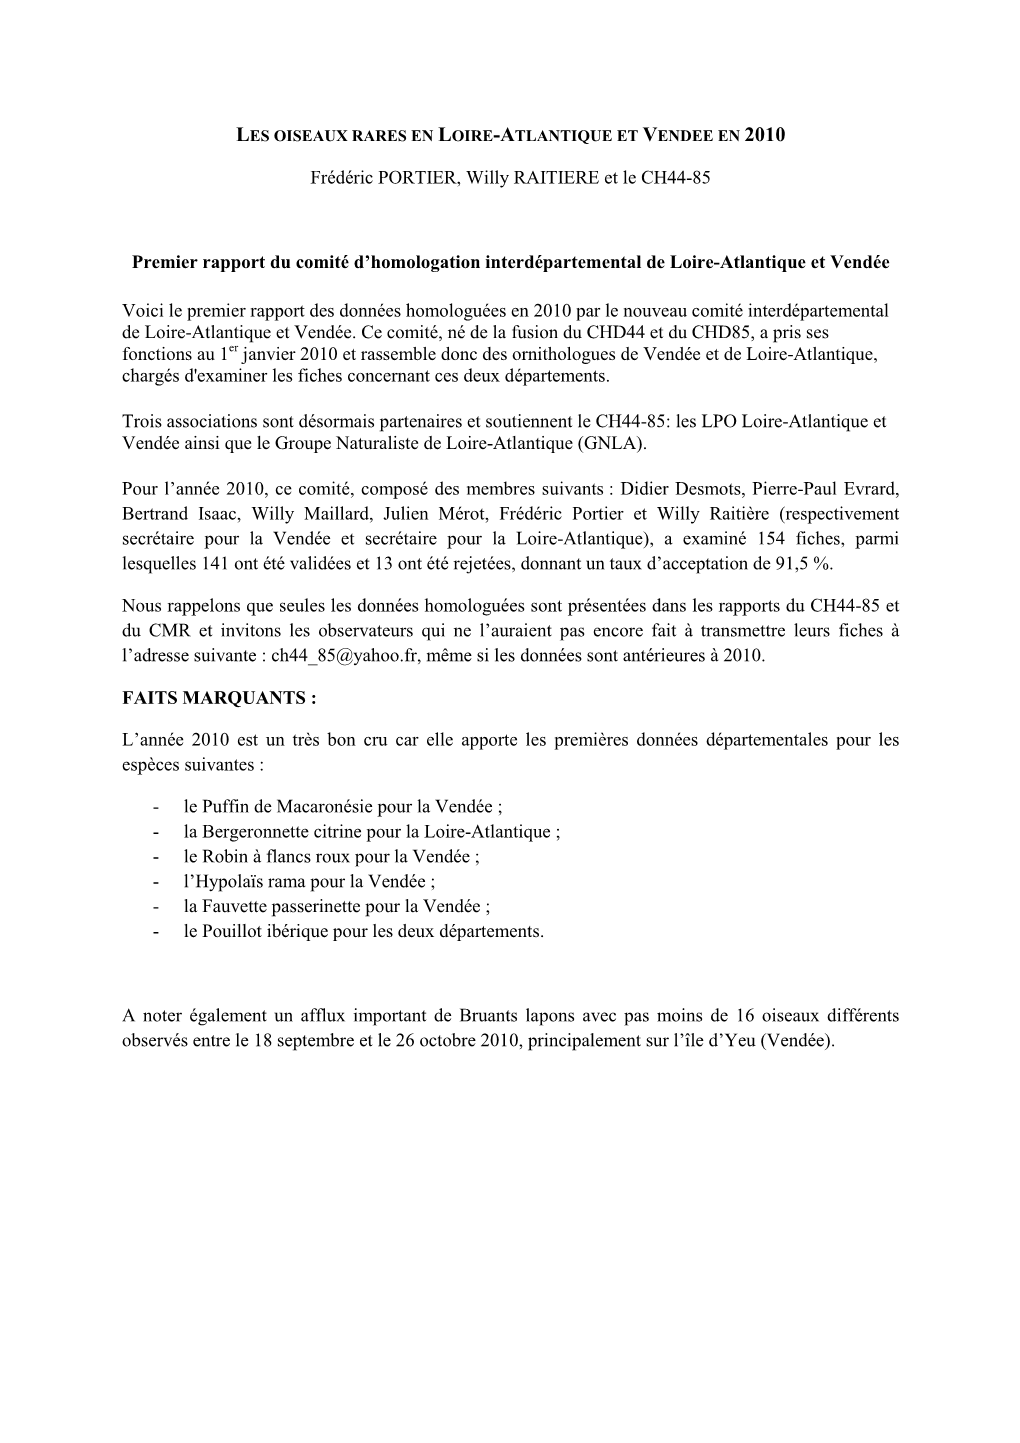 Frédéric PORTIER, Willy RAITIERE Et Le CH44-85 Premier Rapport Du Comité D'homologation Interdépartemental De Loire-Atlant